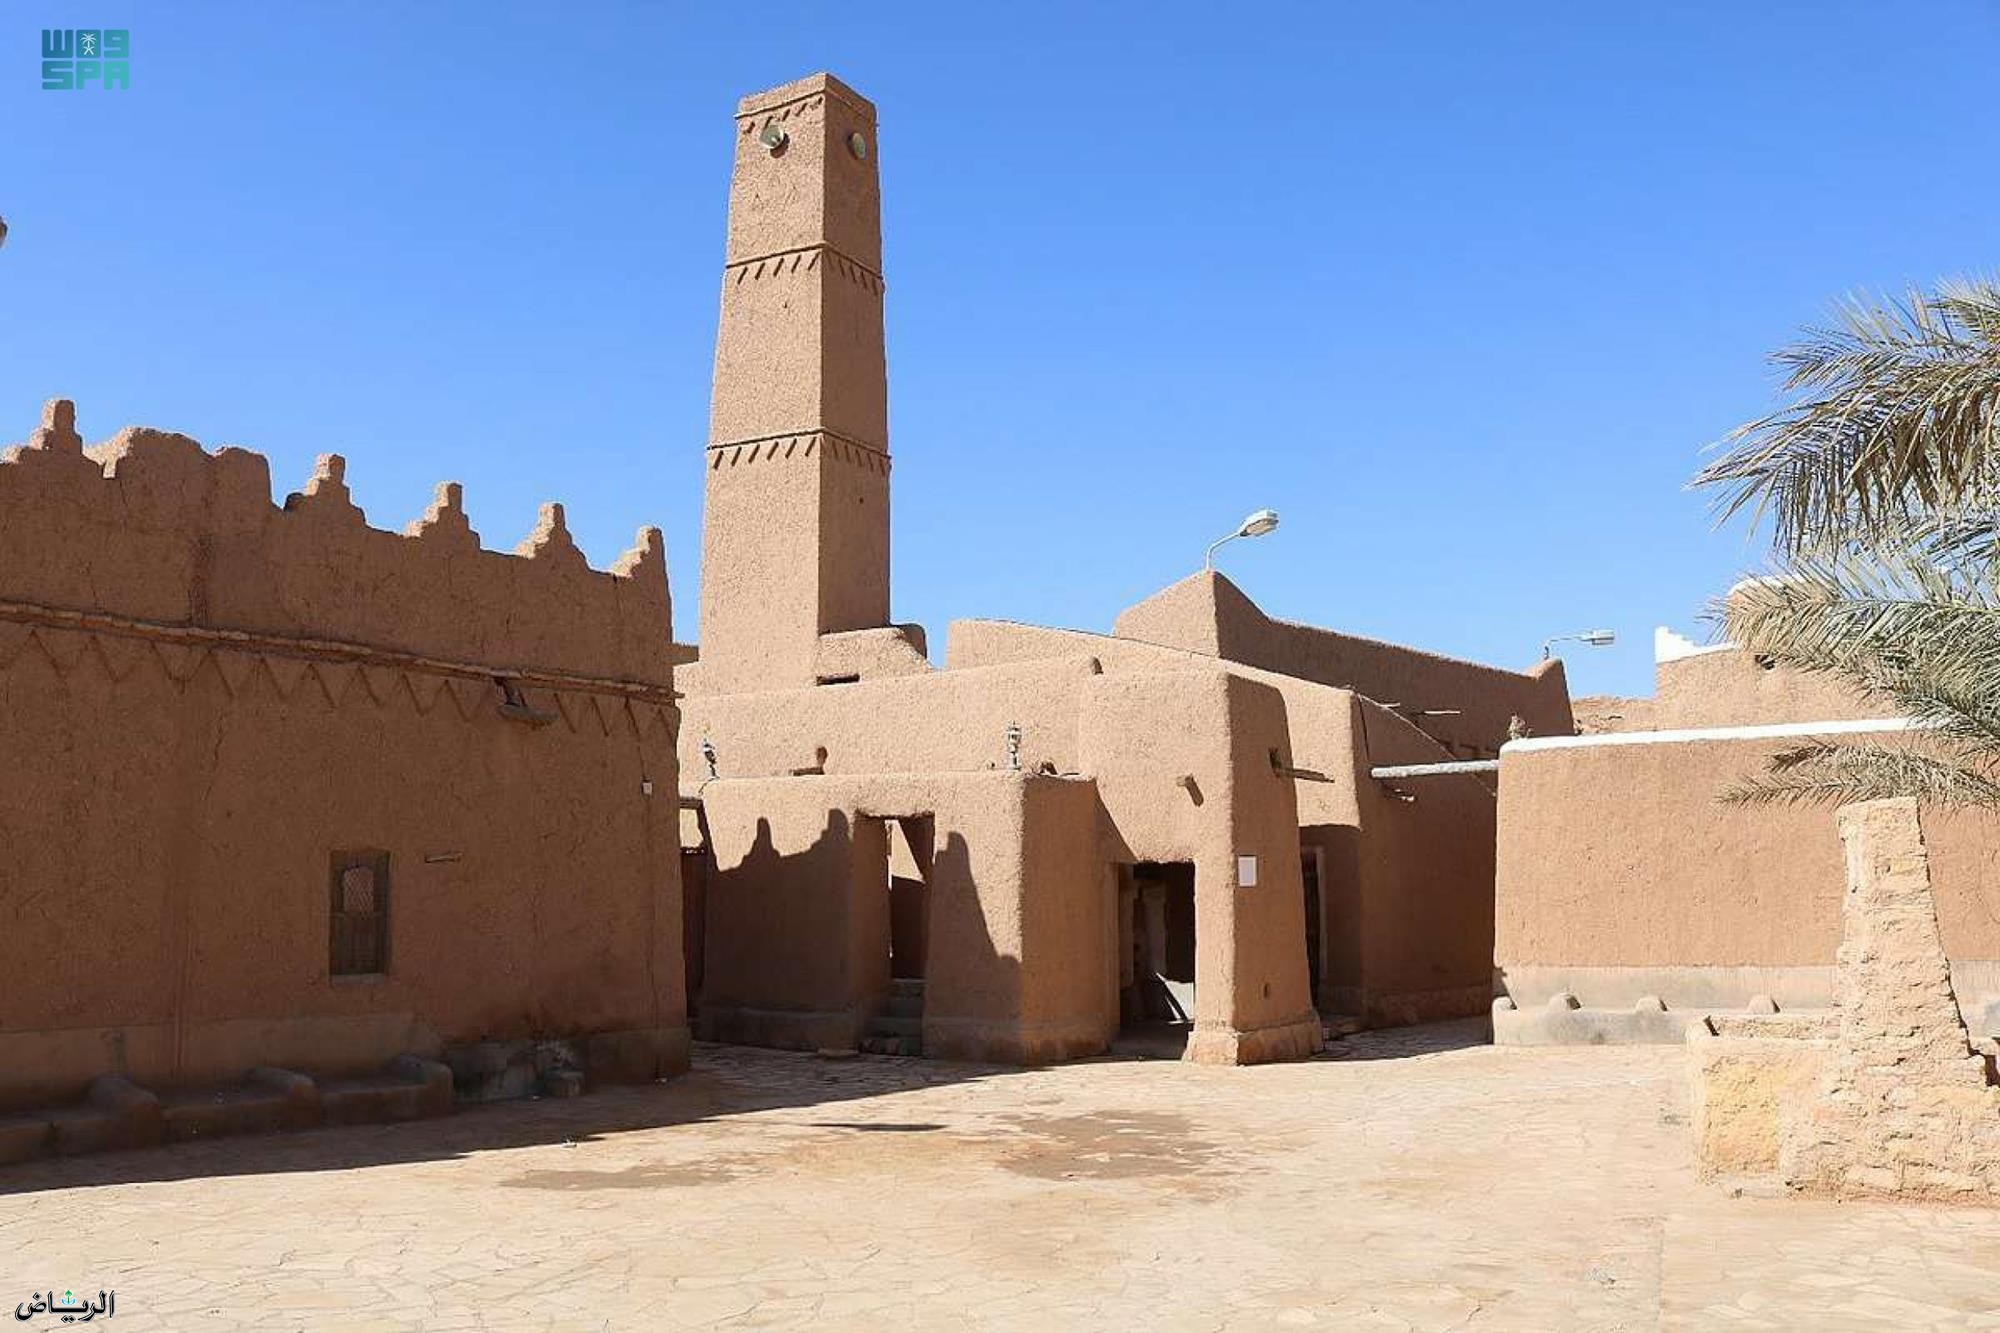  "المساجد التاريخية بمنطقة الرياض" أقصوصة بين الماضي والحاضر